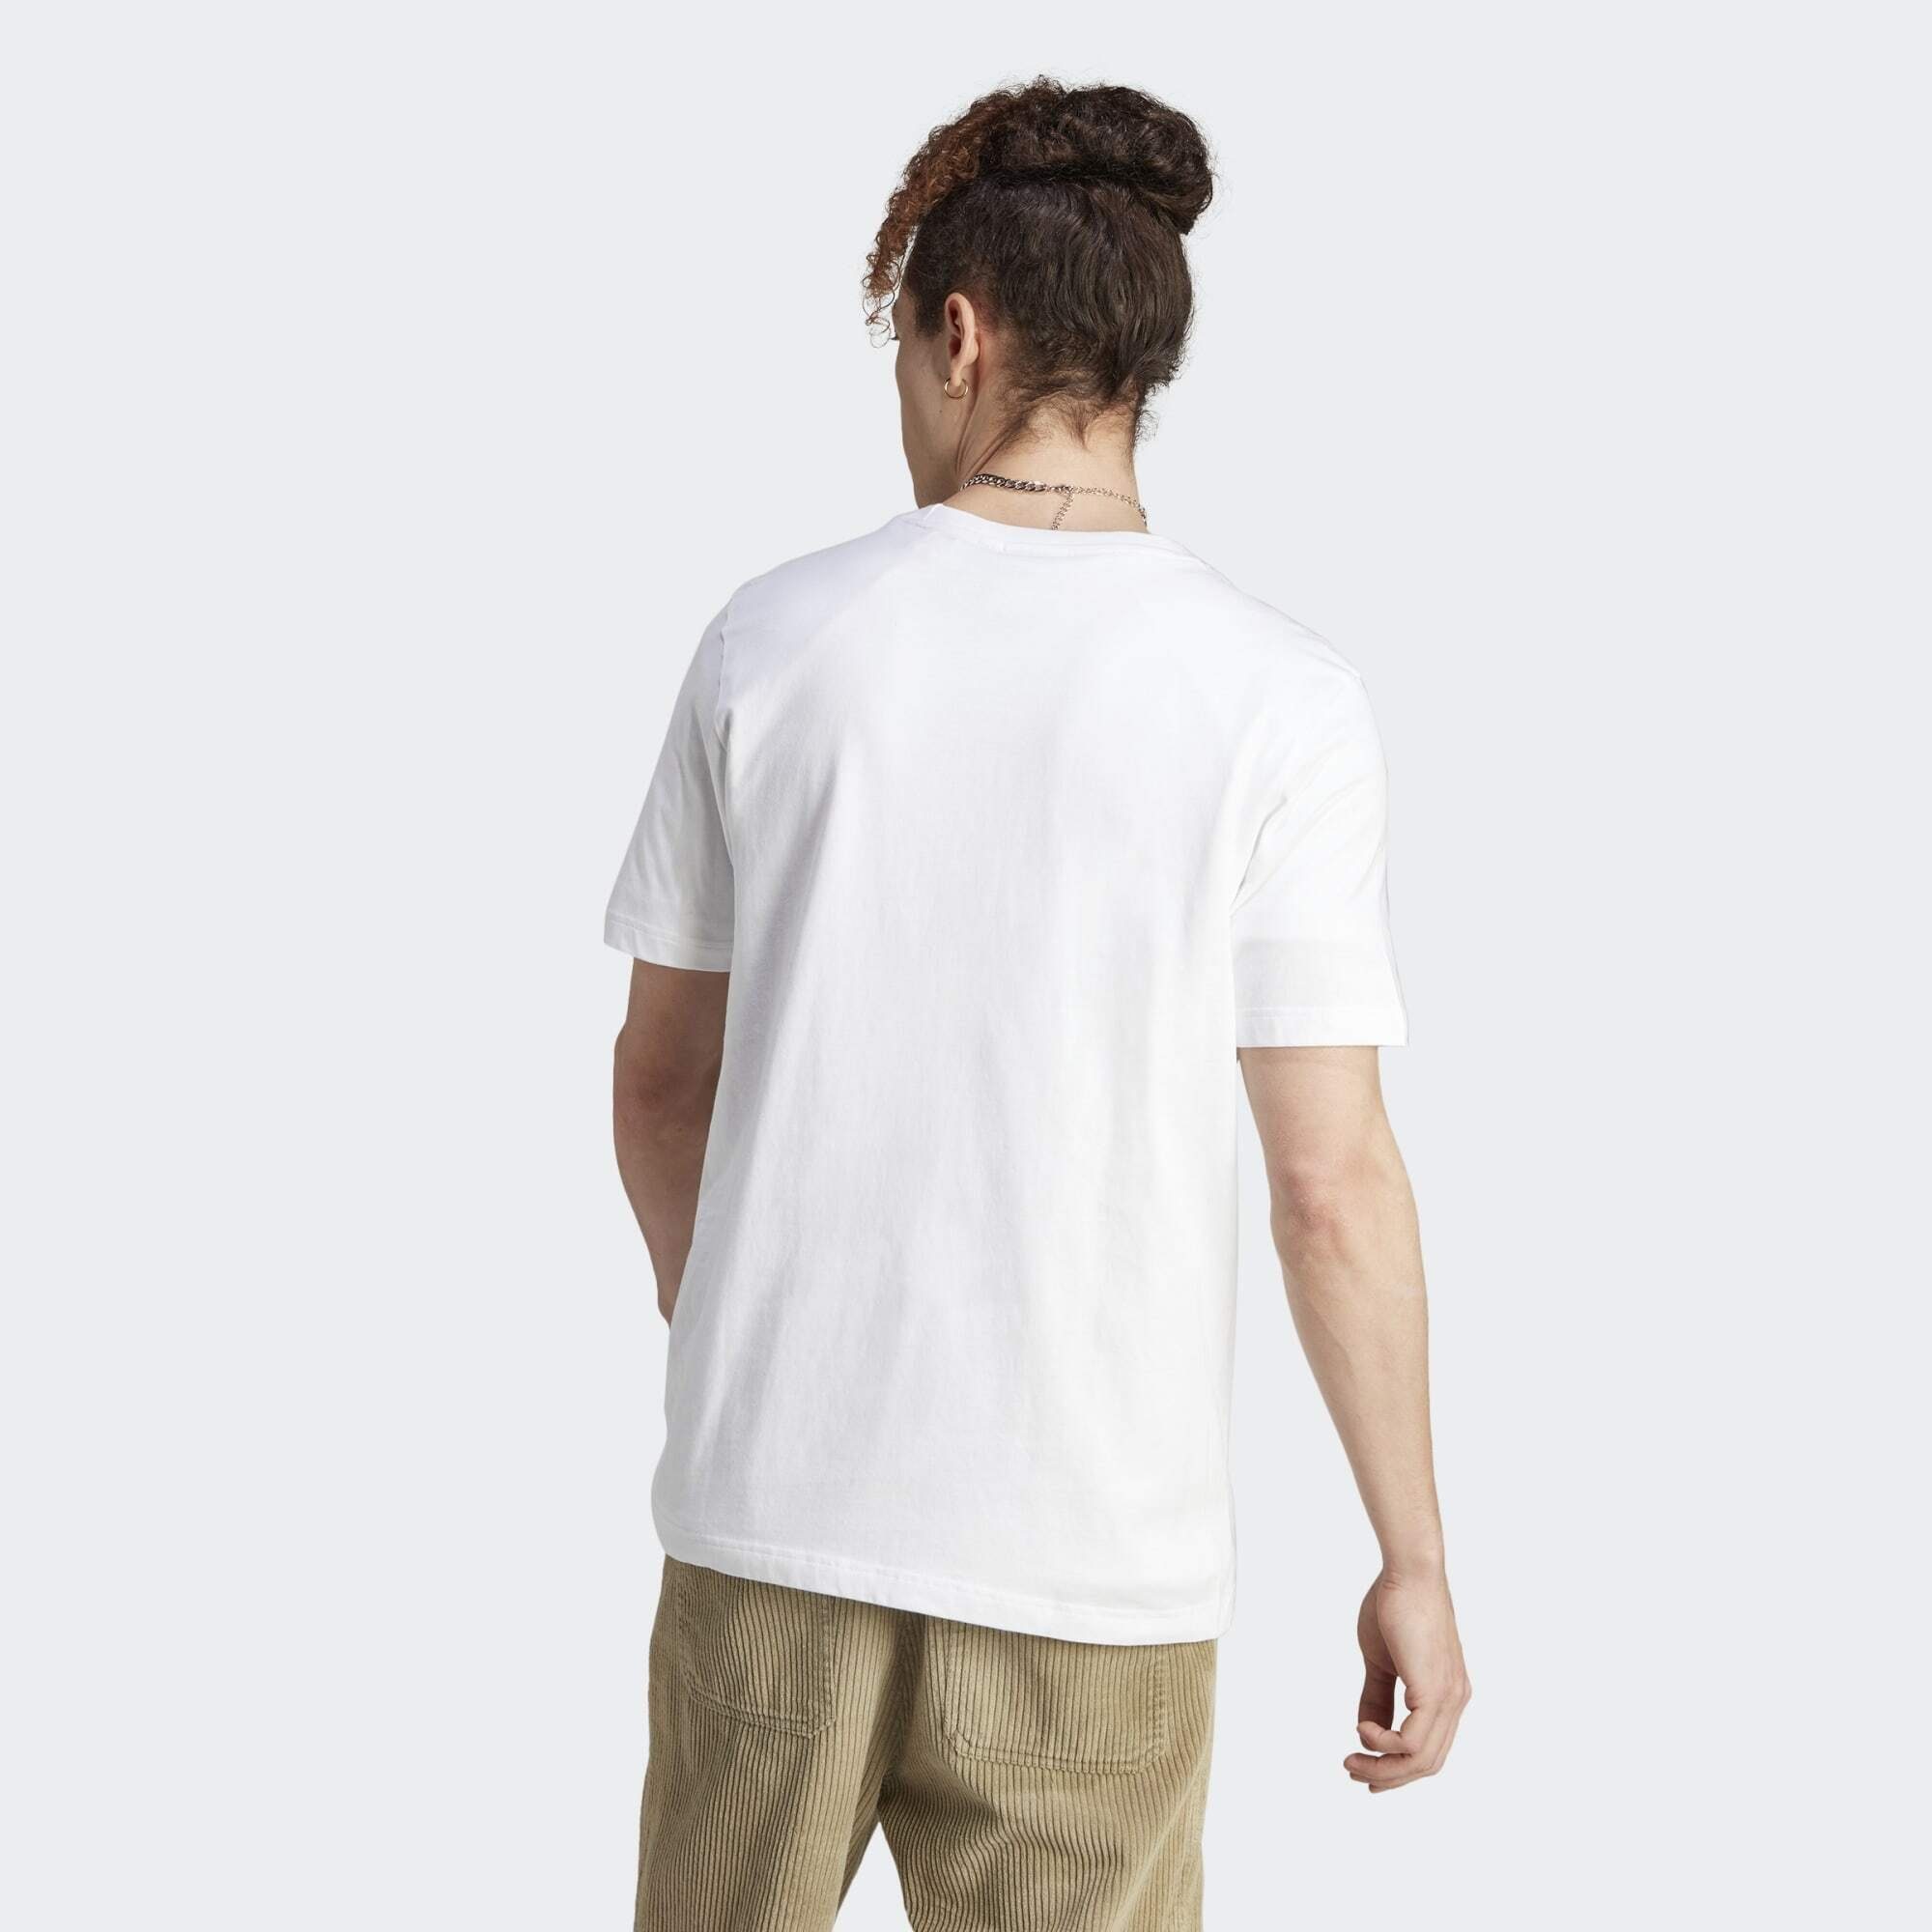 adidas Originals T-Shirt GRAPHICS CAMO T-SHIRT LABEL White TONGUE